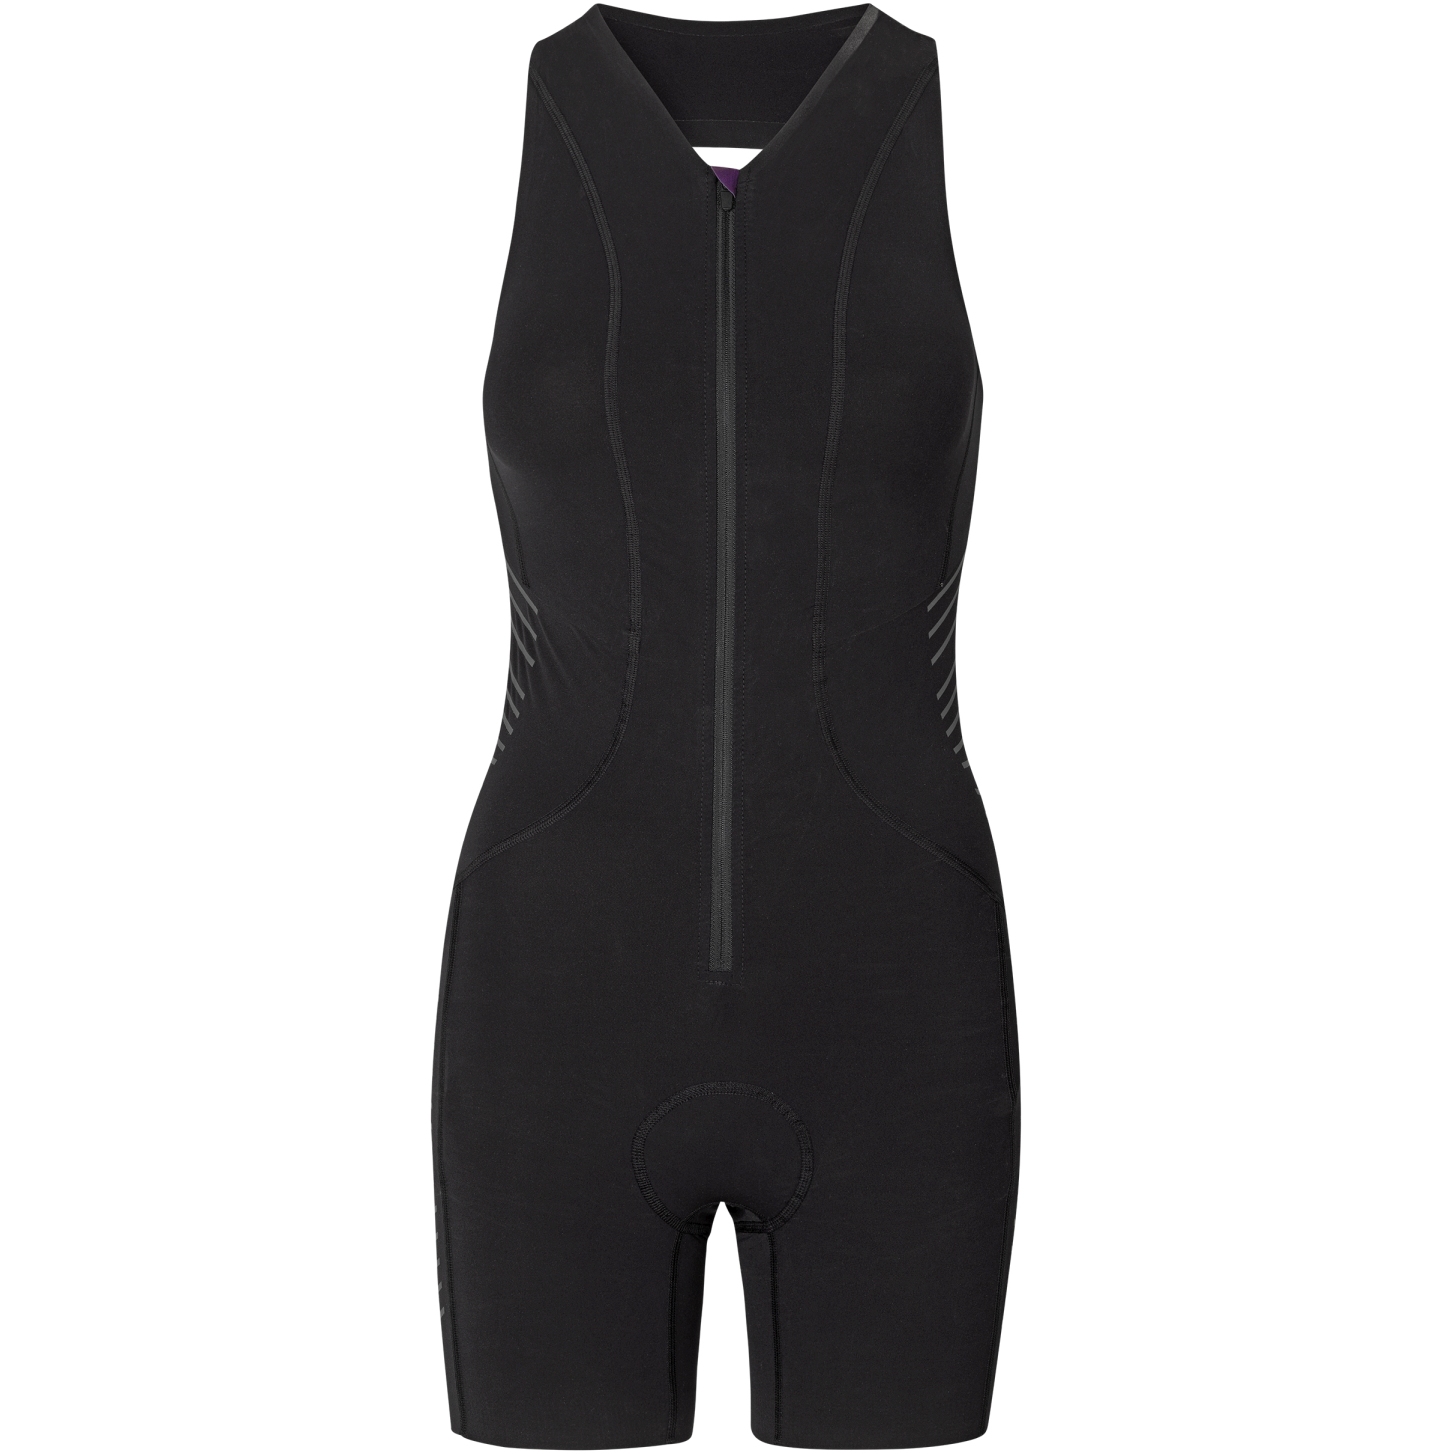 Productfoto van Fe226 Women&#039;s AeroForce Sleeveless Open-back Speed Suit - black